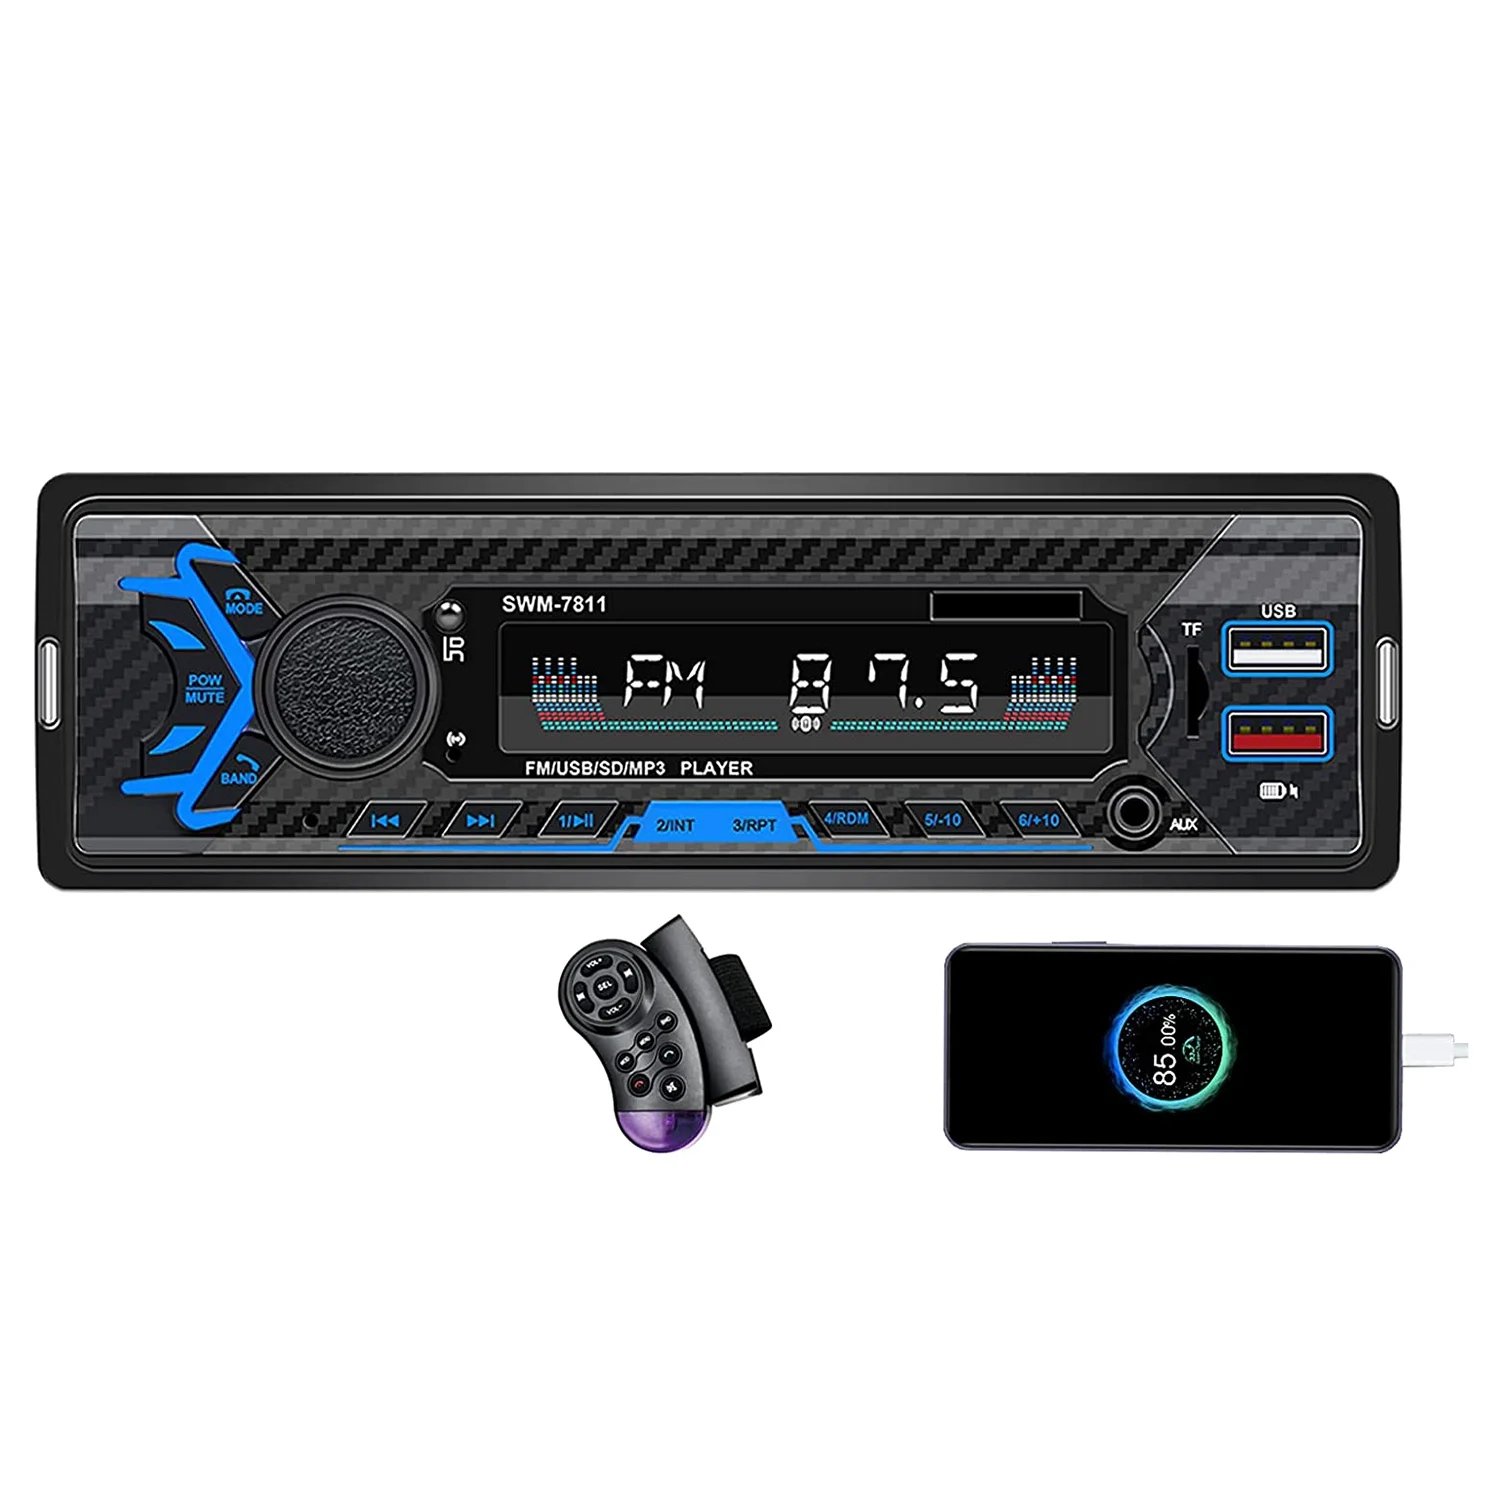 

Автомобильная стереосистема с голосовым управлением, FM-радио, Bluetooth, громкой связью, быстрая зарядка через 2 USB, mp3-плеер